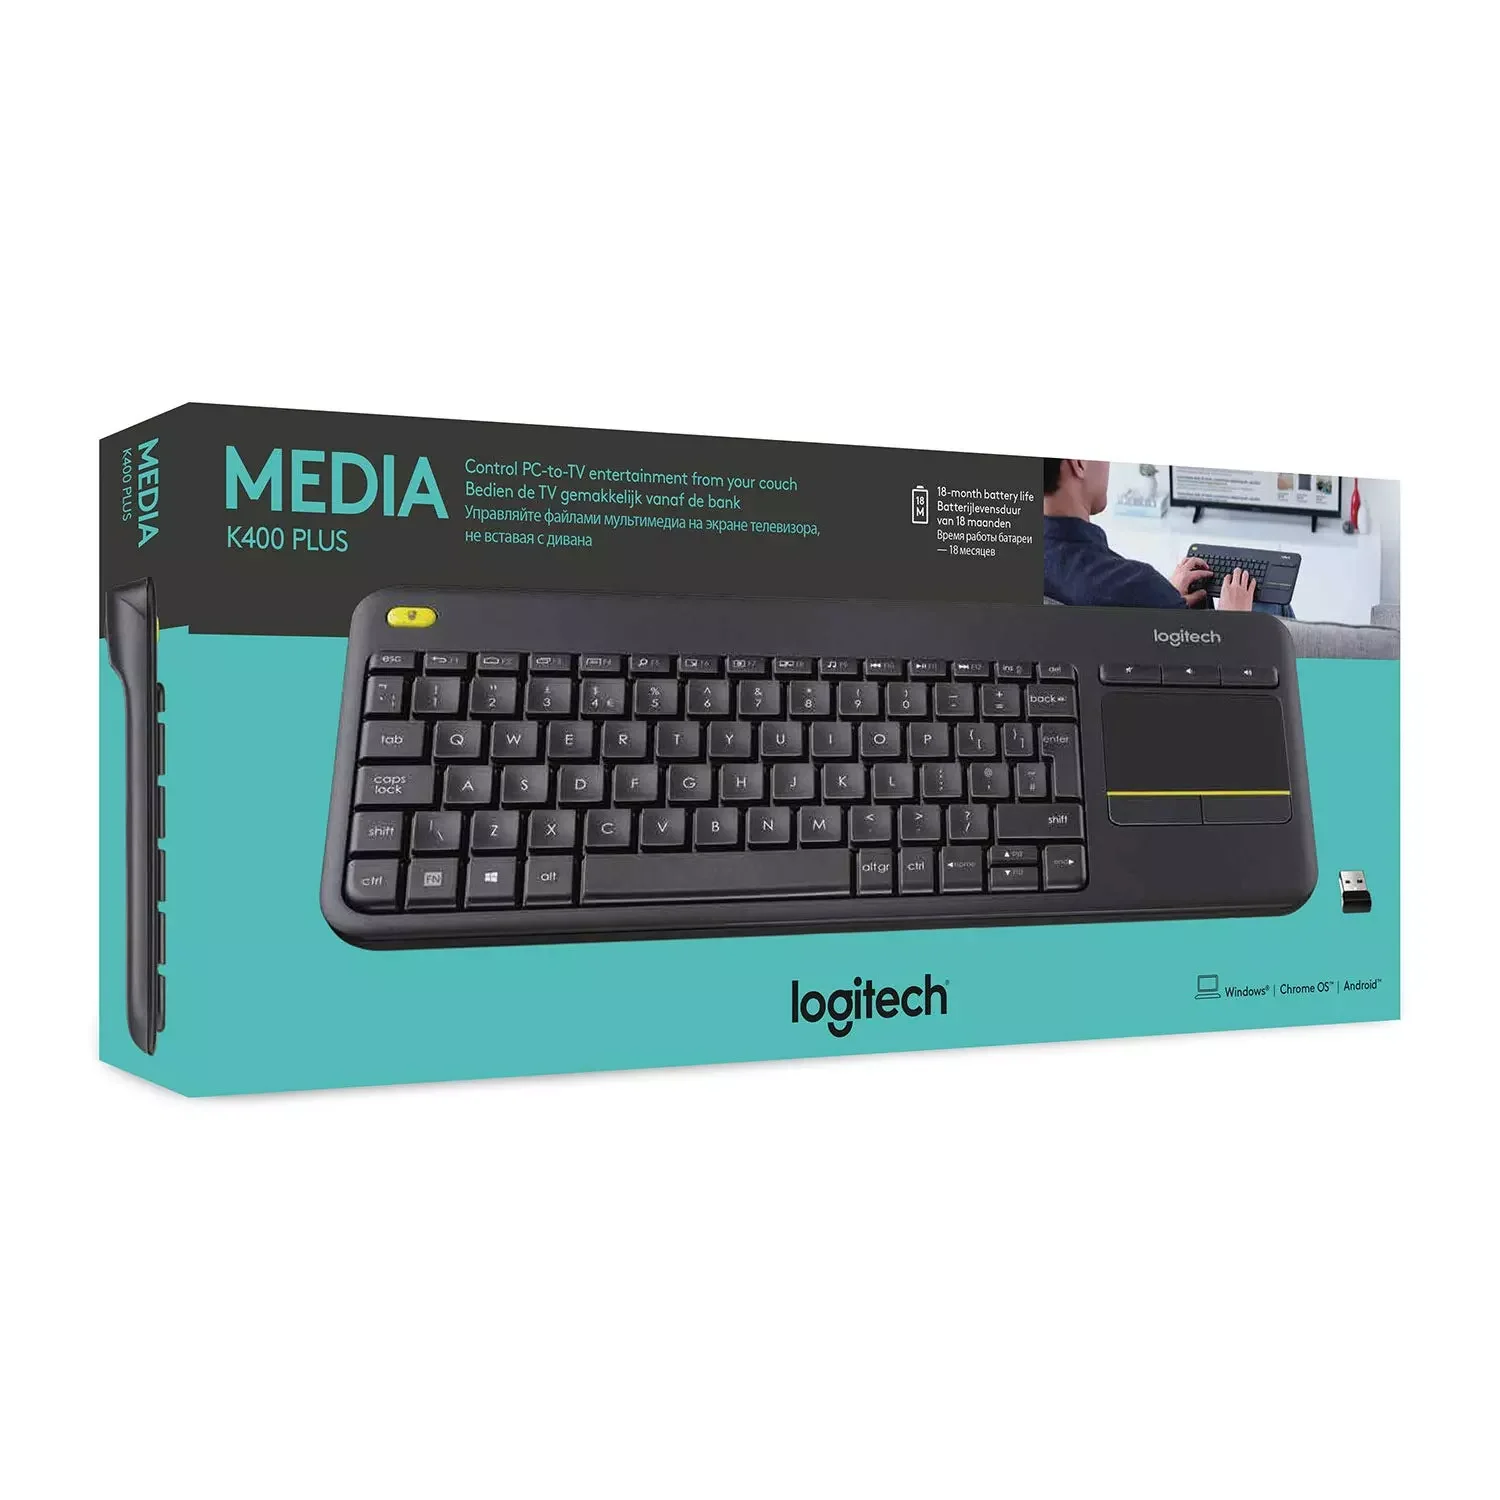 100% Logitech K400 Wireless Touch For Pc Tv - Instrumental Keyboard,Logitech K400plus Keyboard,Foldable Keyboard Product on Alibaba.com